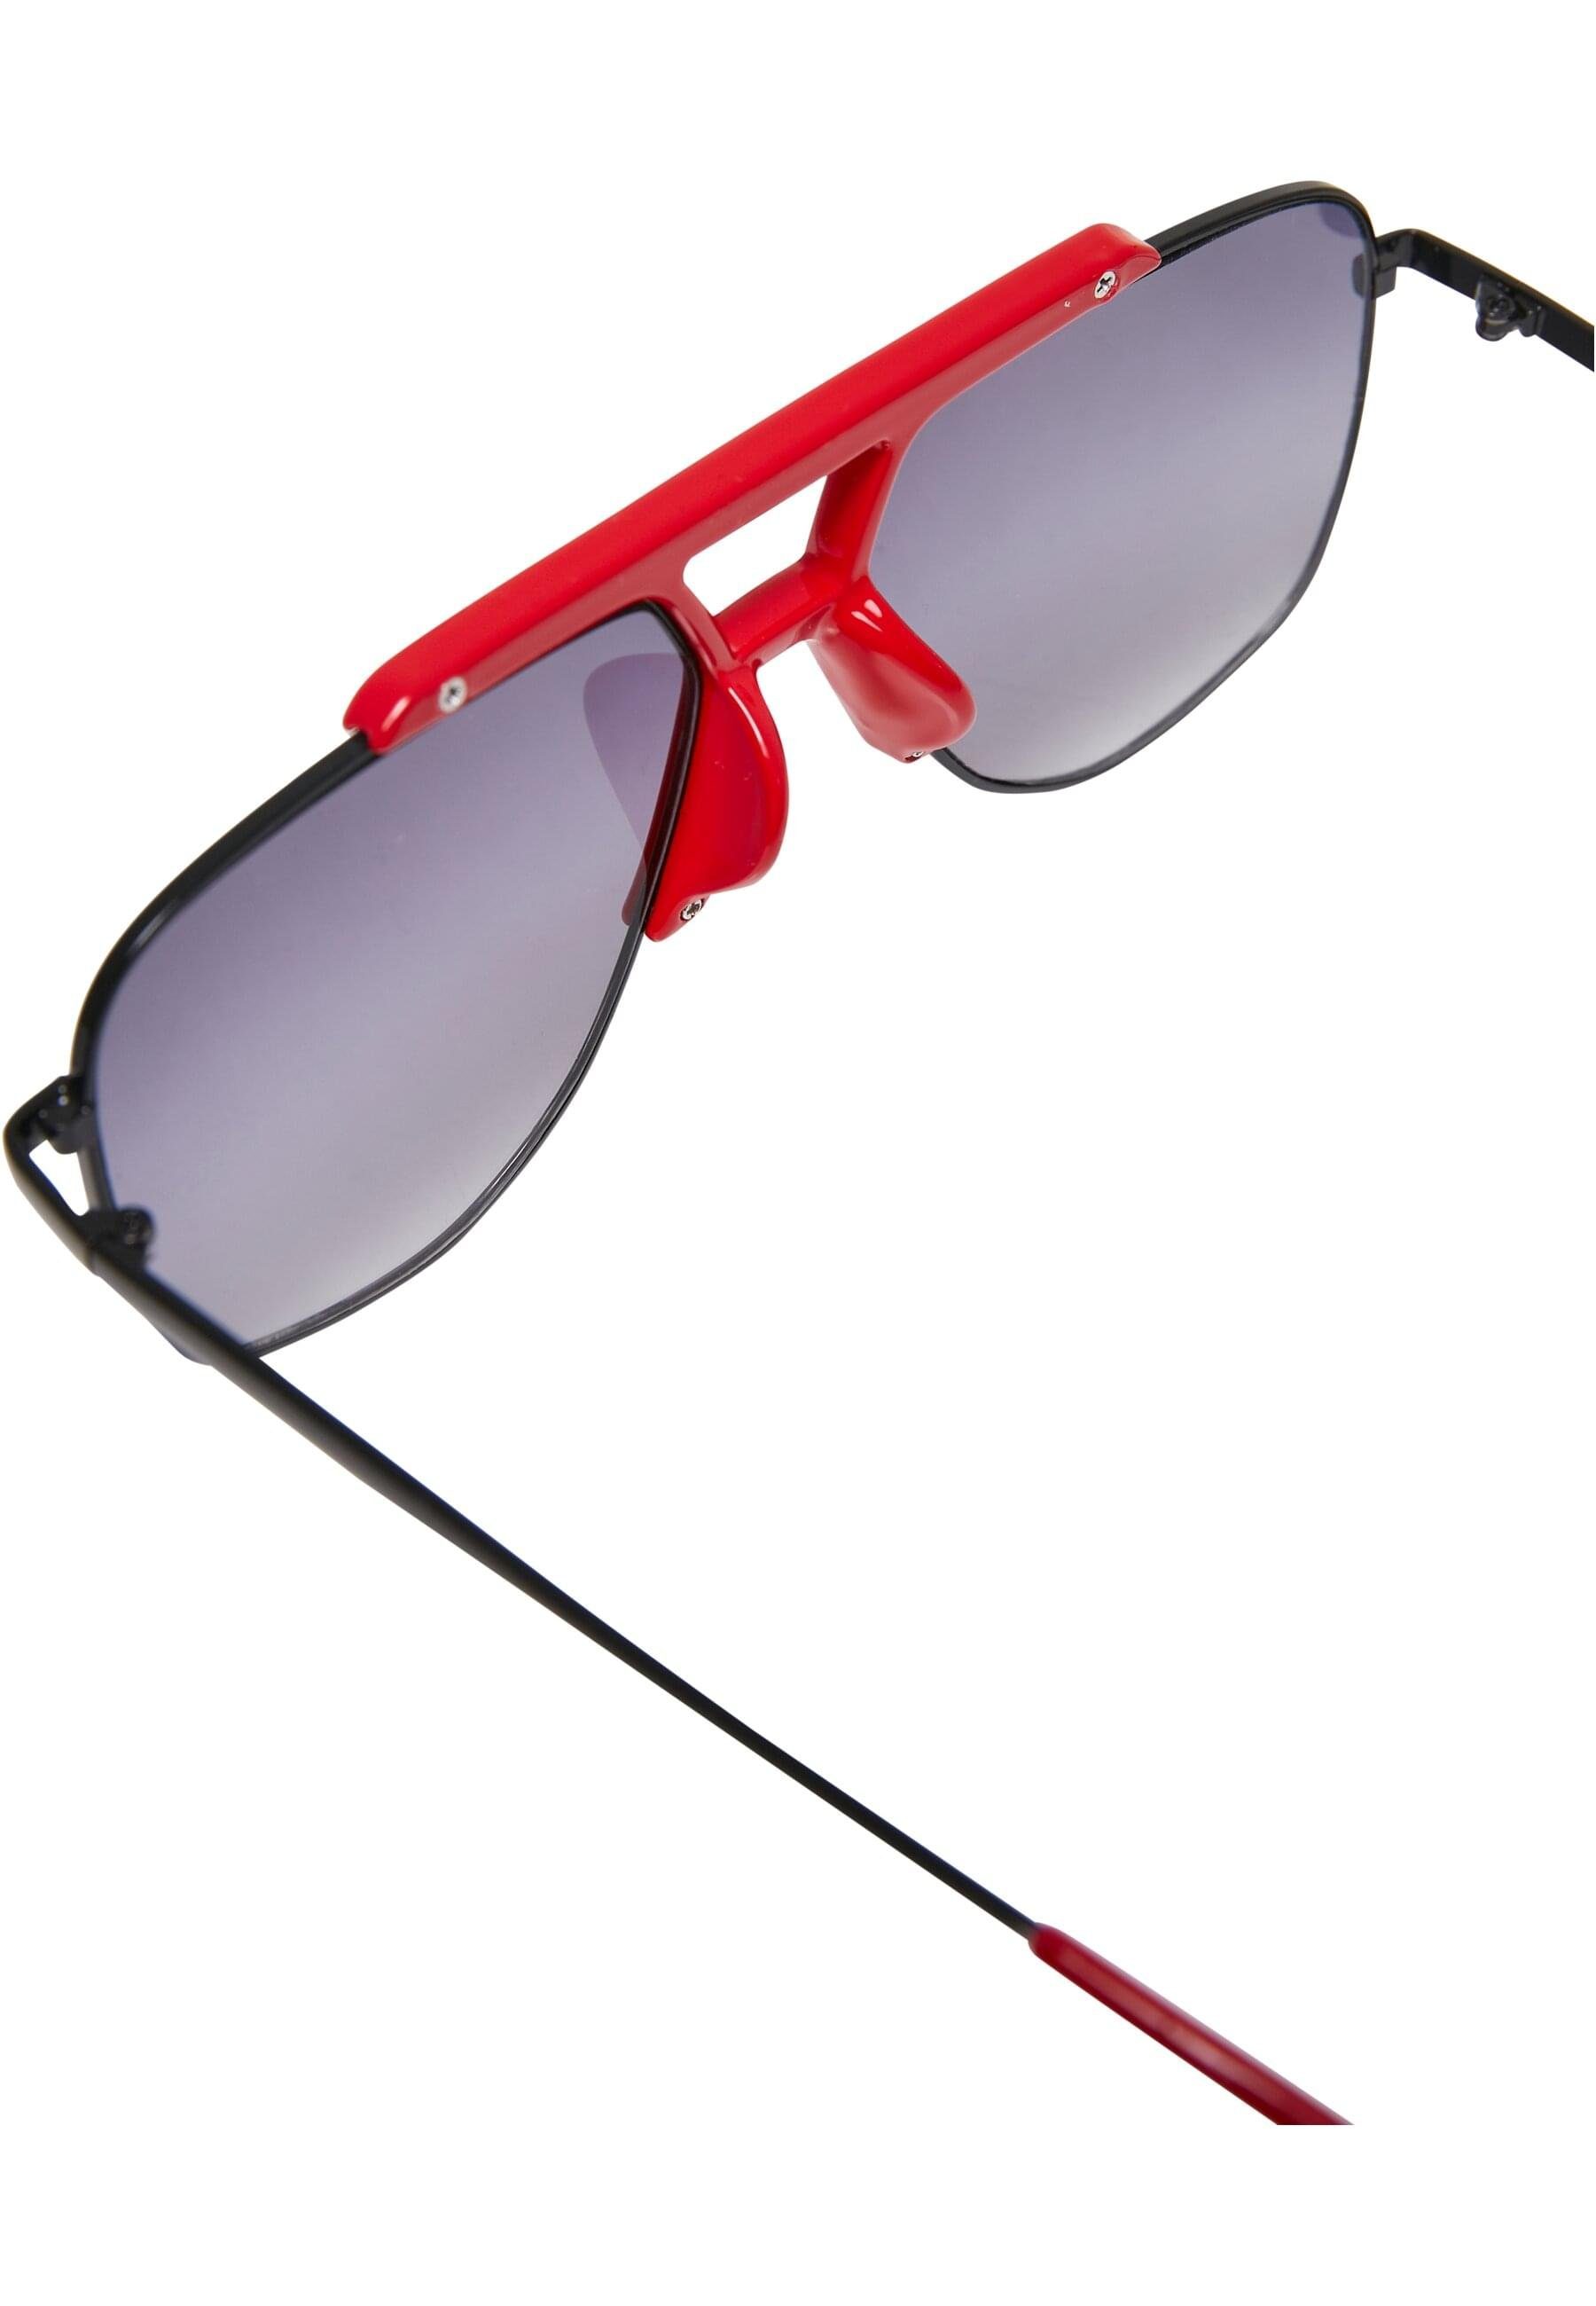 Sunglasses hugered/black Saint Tropez Unisex Sonnenbrille URBAN CLASSICS